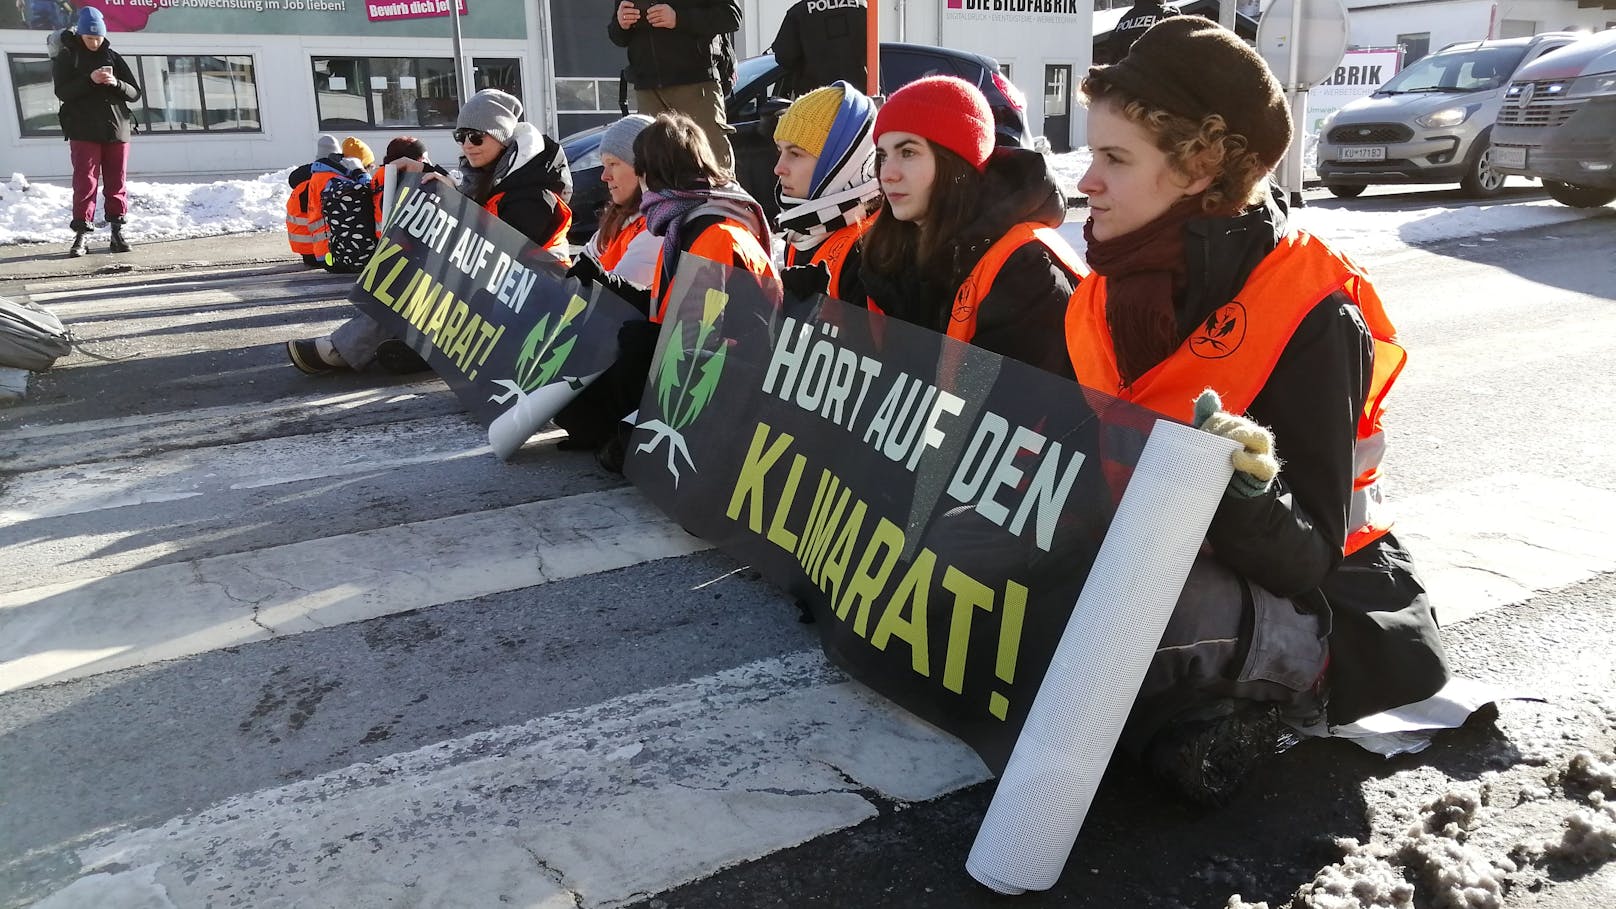 "Wir machen weiter": Klimakleber mit knallharter Ansage